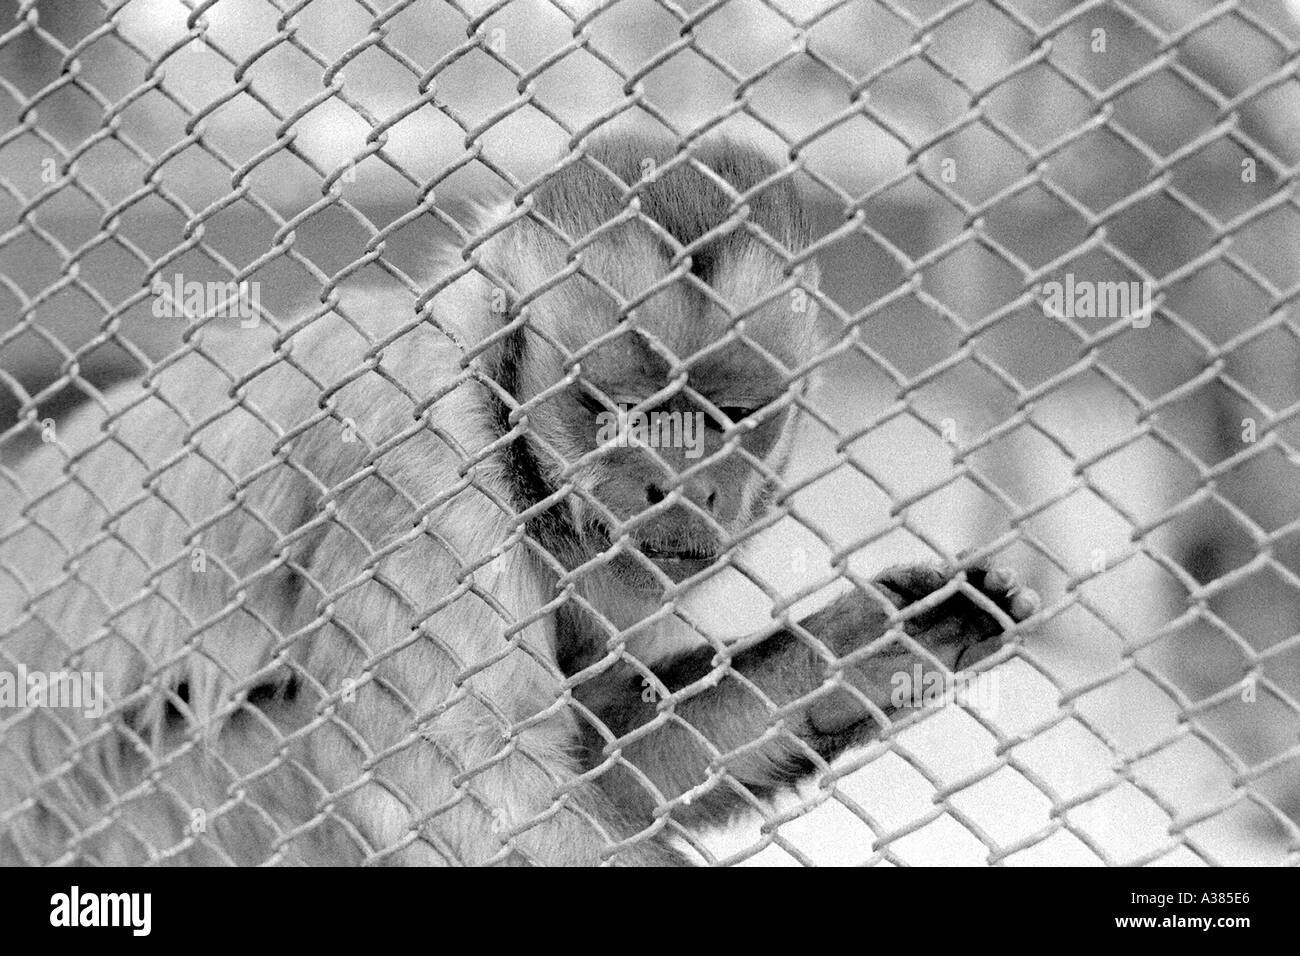 Kapuziner-Affen In einem Käfig Stockfoto